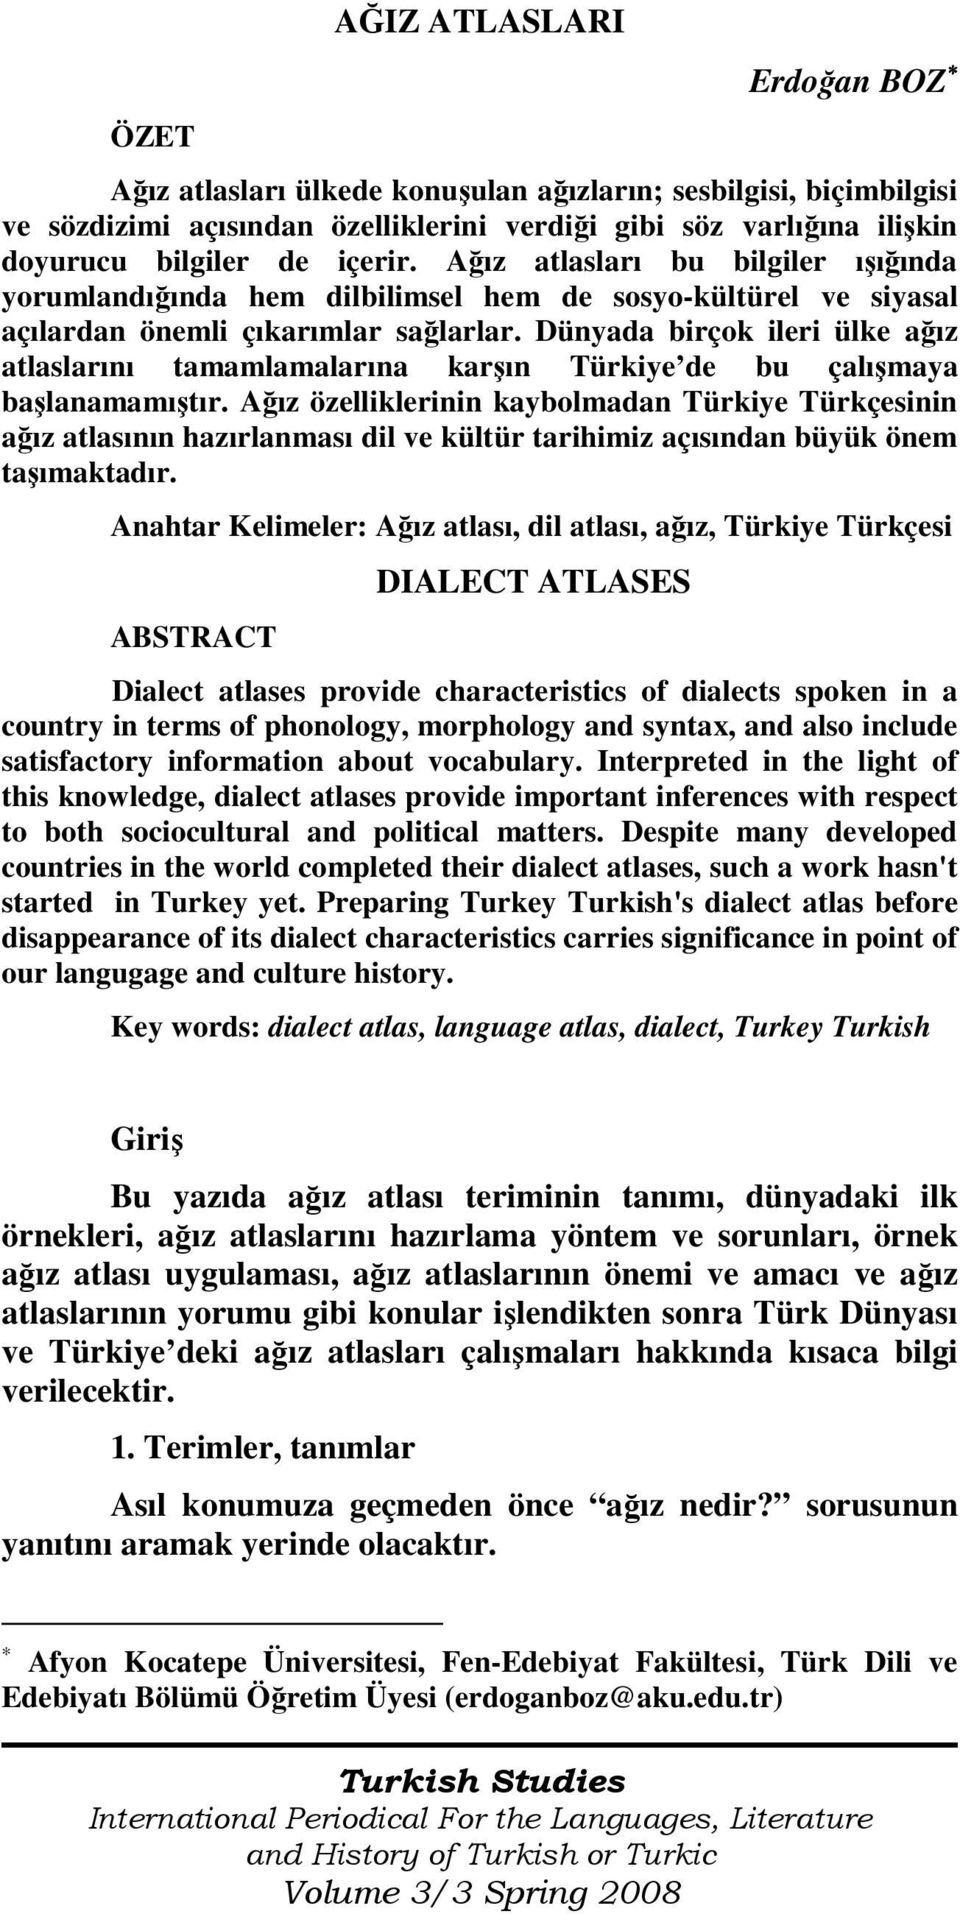 Dünyada birçok ileri ülke ağız atlaslarını tamamlamalarına karşın Türkiye de bu çalışmaya başlanamamıştır.